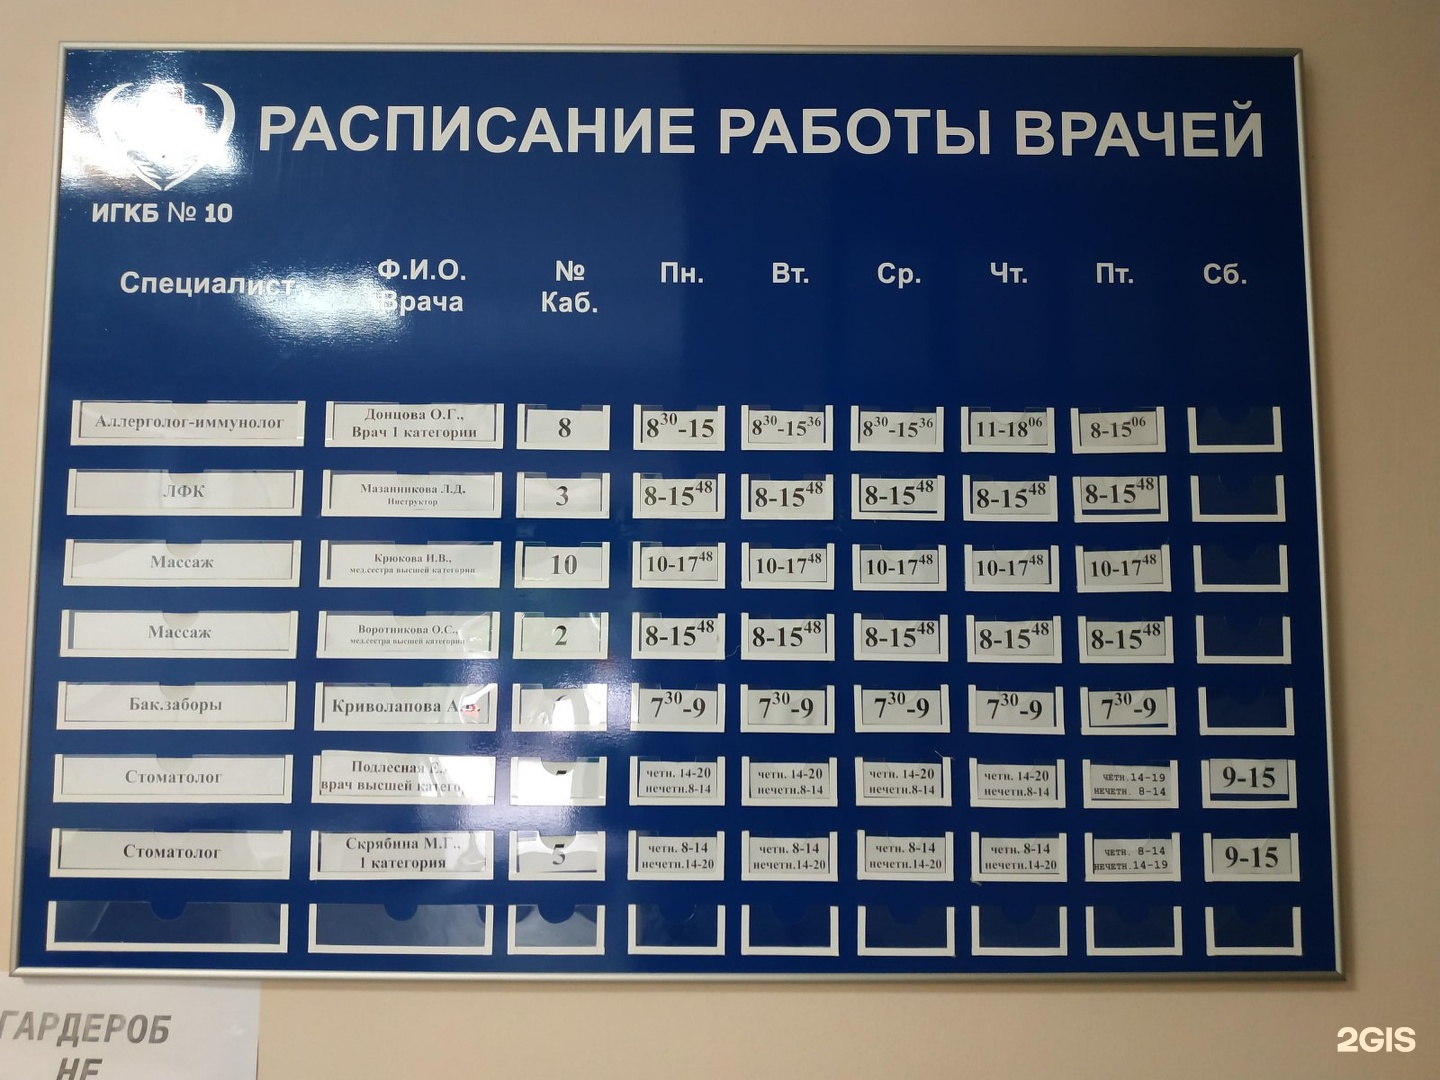 9 Детская поликлиника №9 г. Иркутск